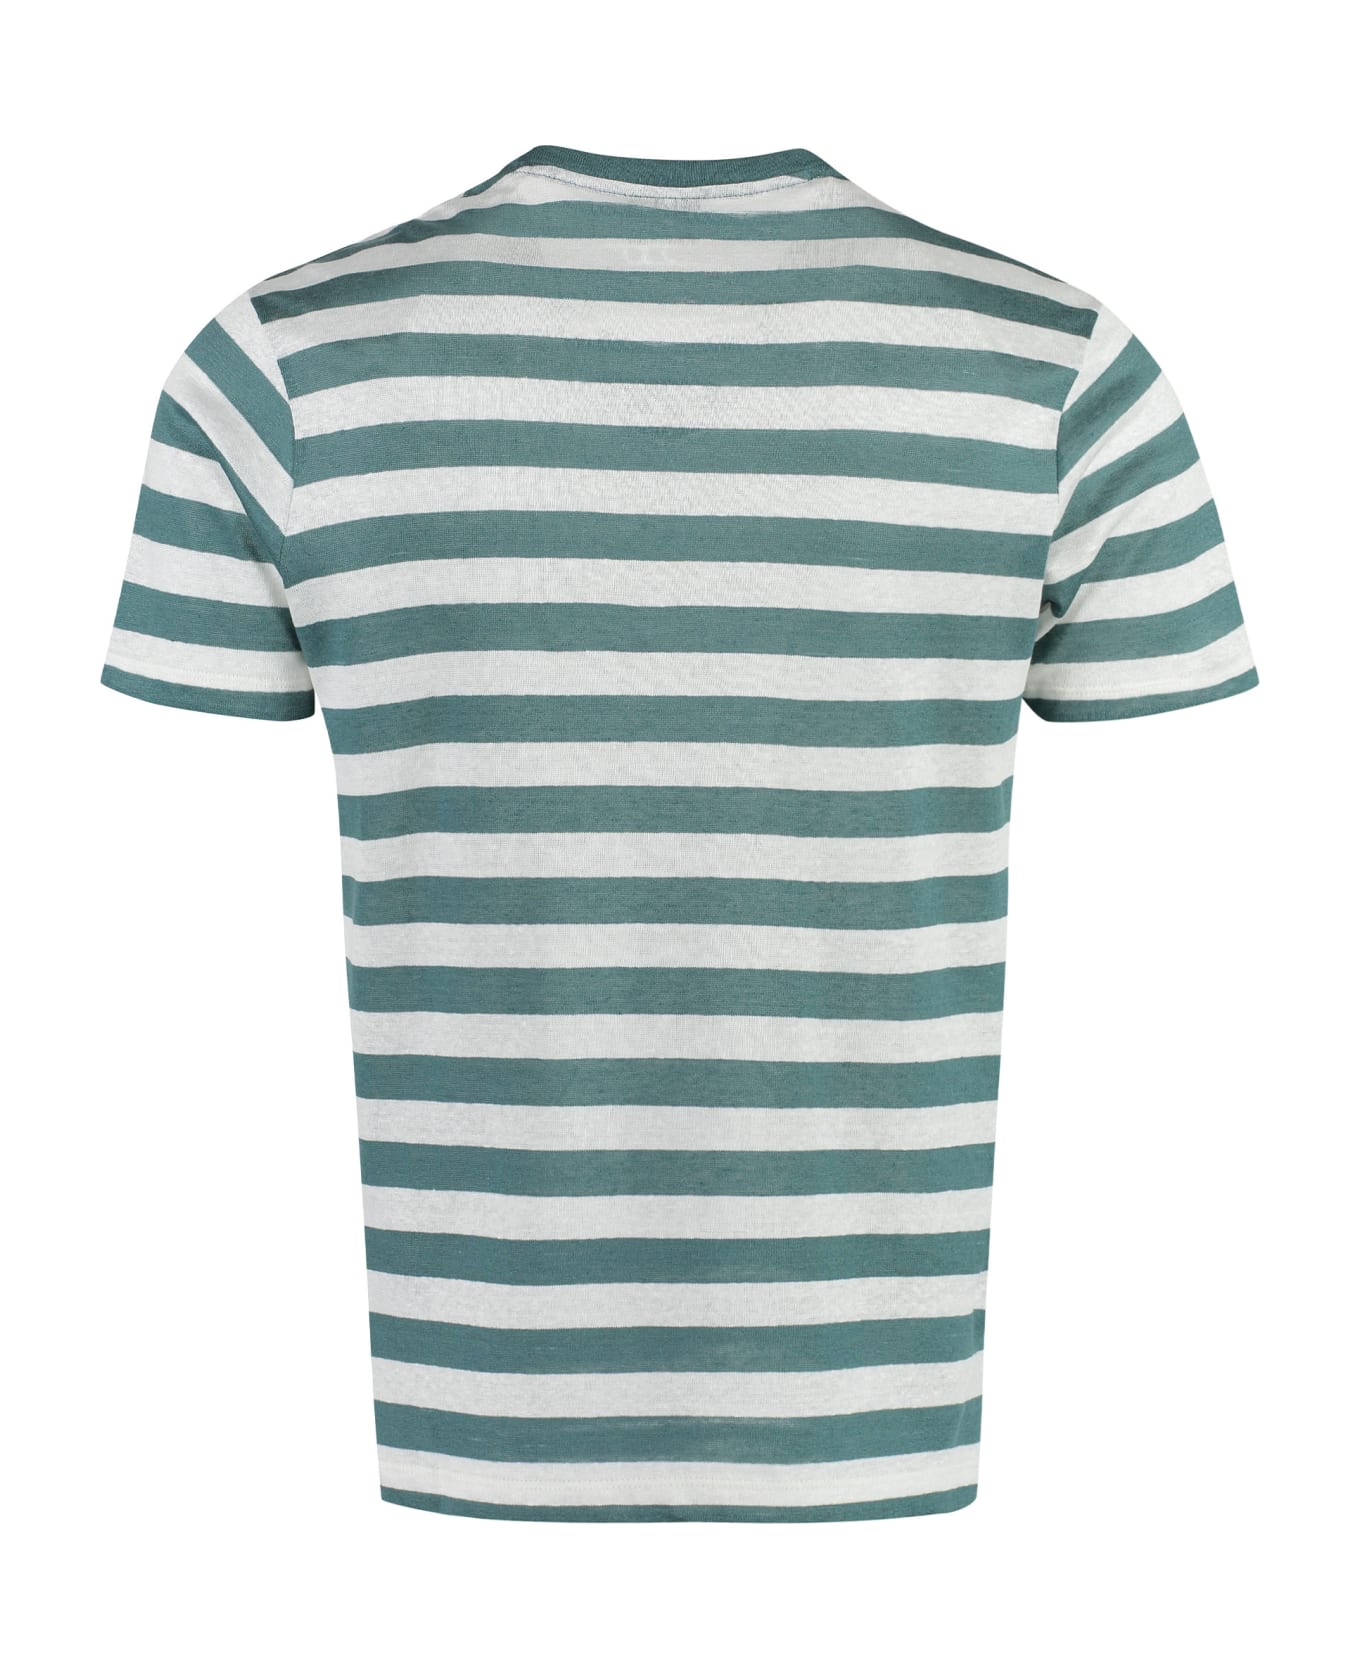 Paul&Shark Striped Linen-cotton Blend T-shirt - green